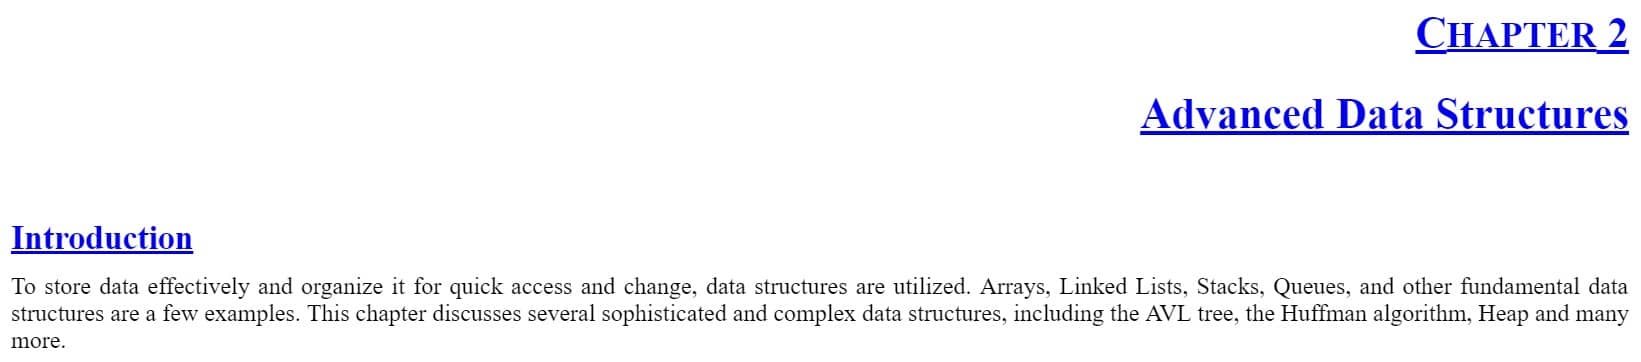 فصل 2 کتاب Advanced Data Structures and Algorithms